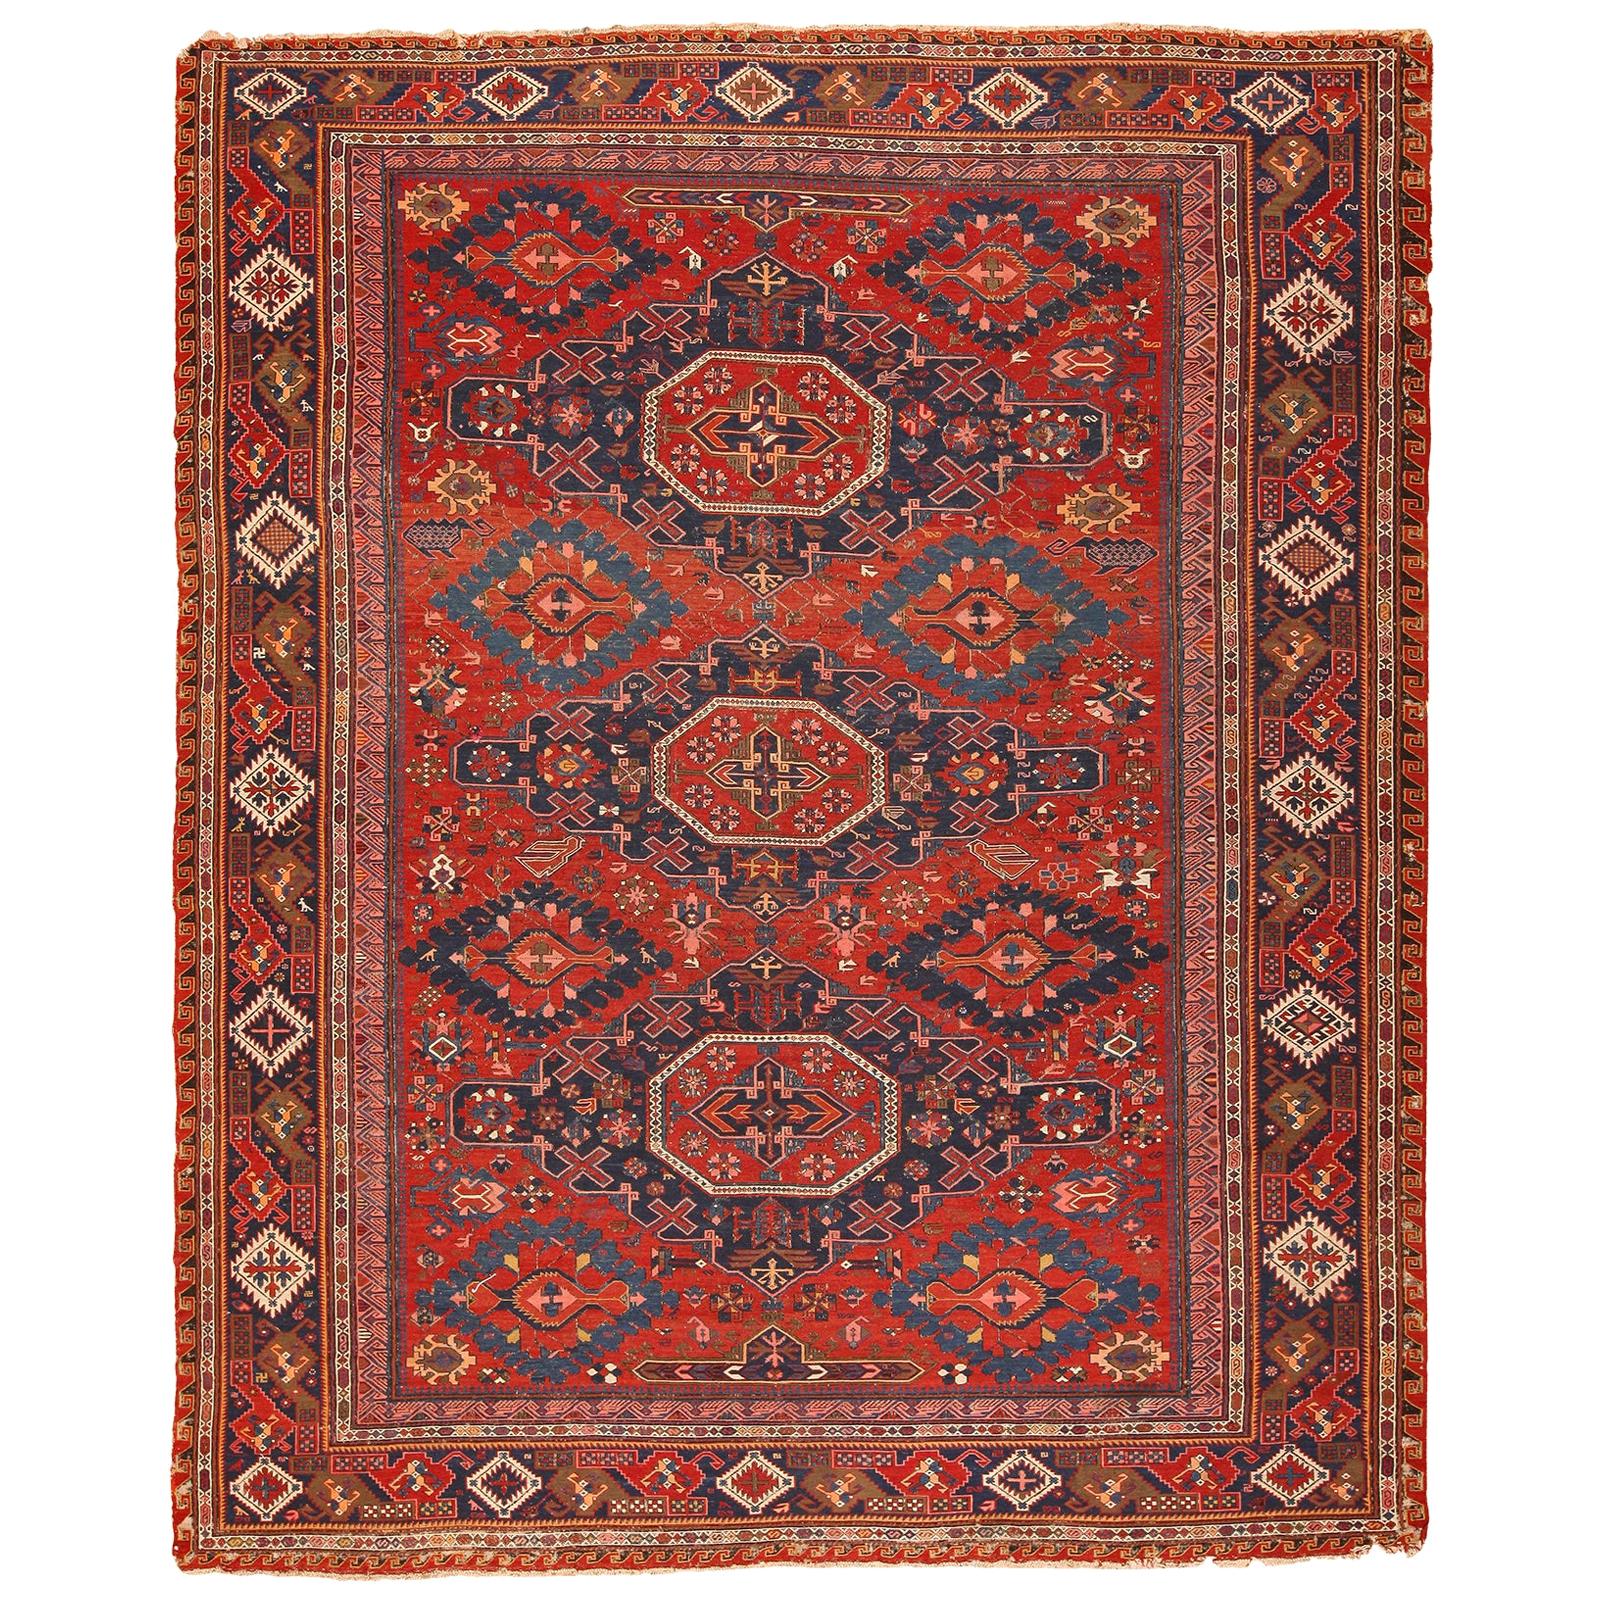 Antiker kaukasischer Soumak-Teppich. Größe: 9 Fuß 2 Zoll x 11 Fuß 4 Zoll